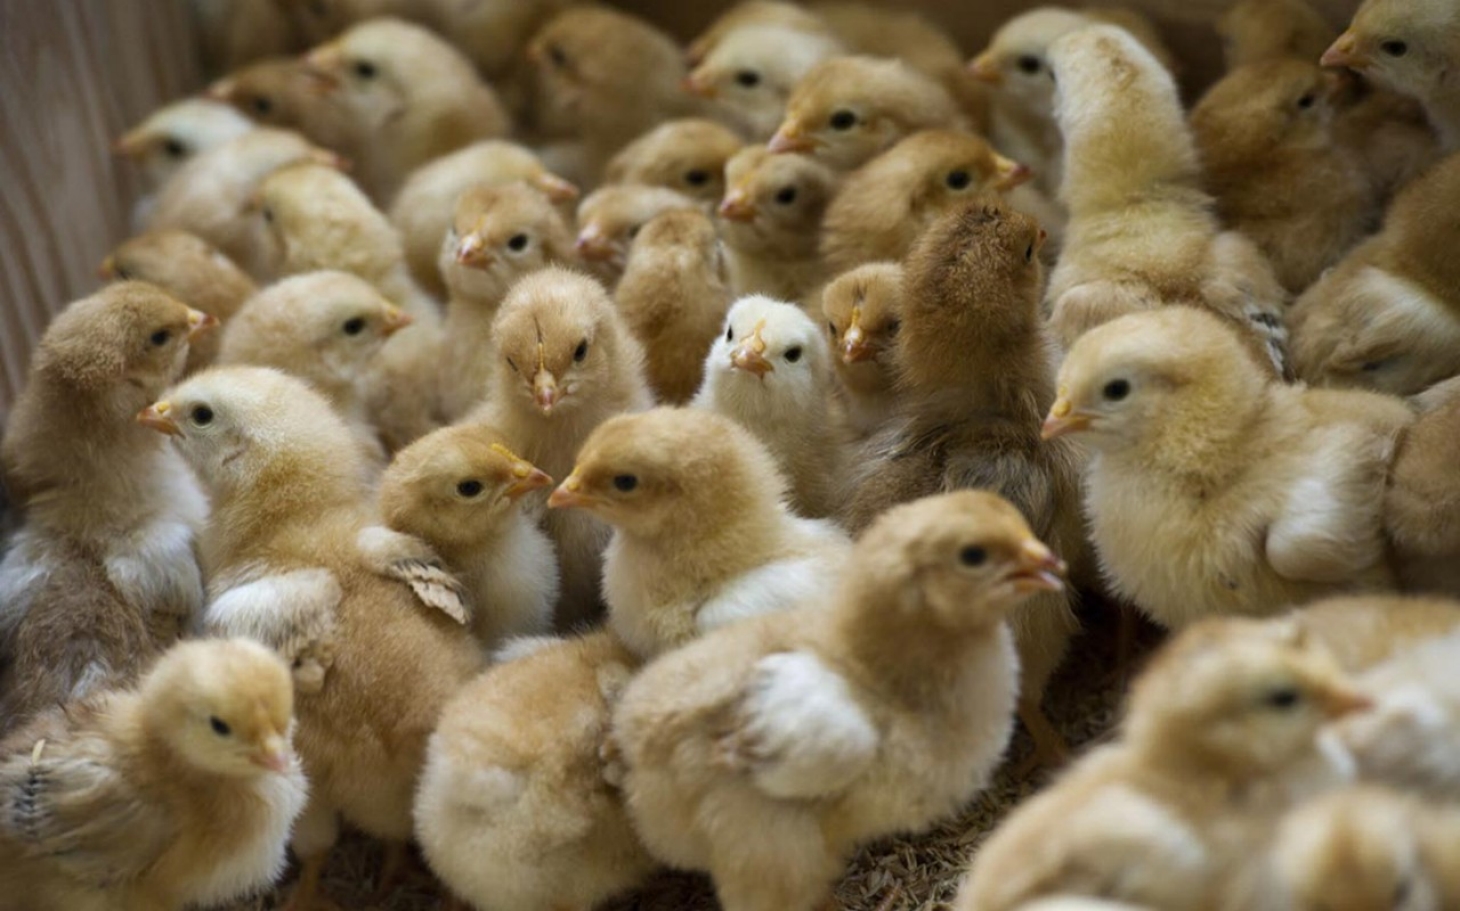 Hvorfor spiser vi ikke mannlige kyllinger?